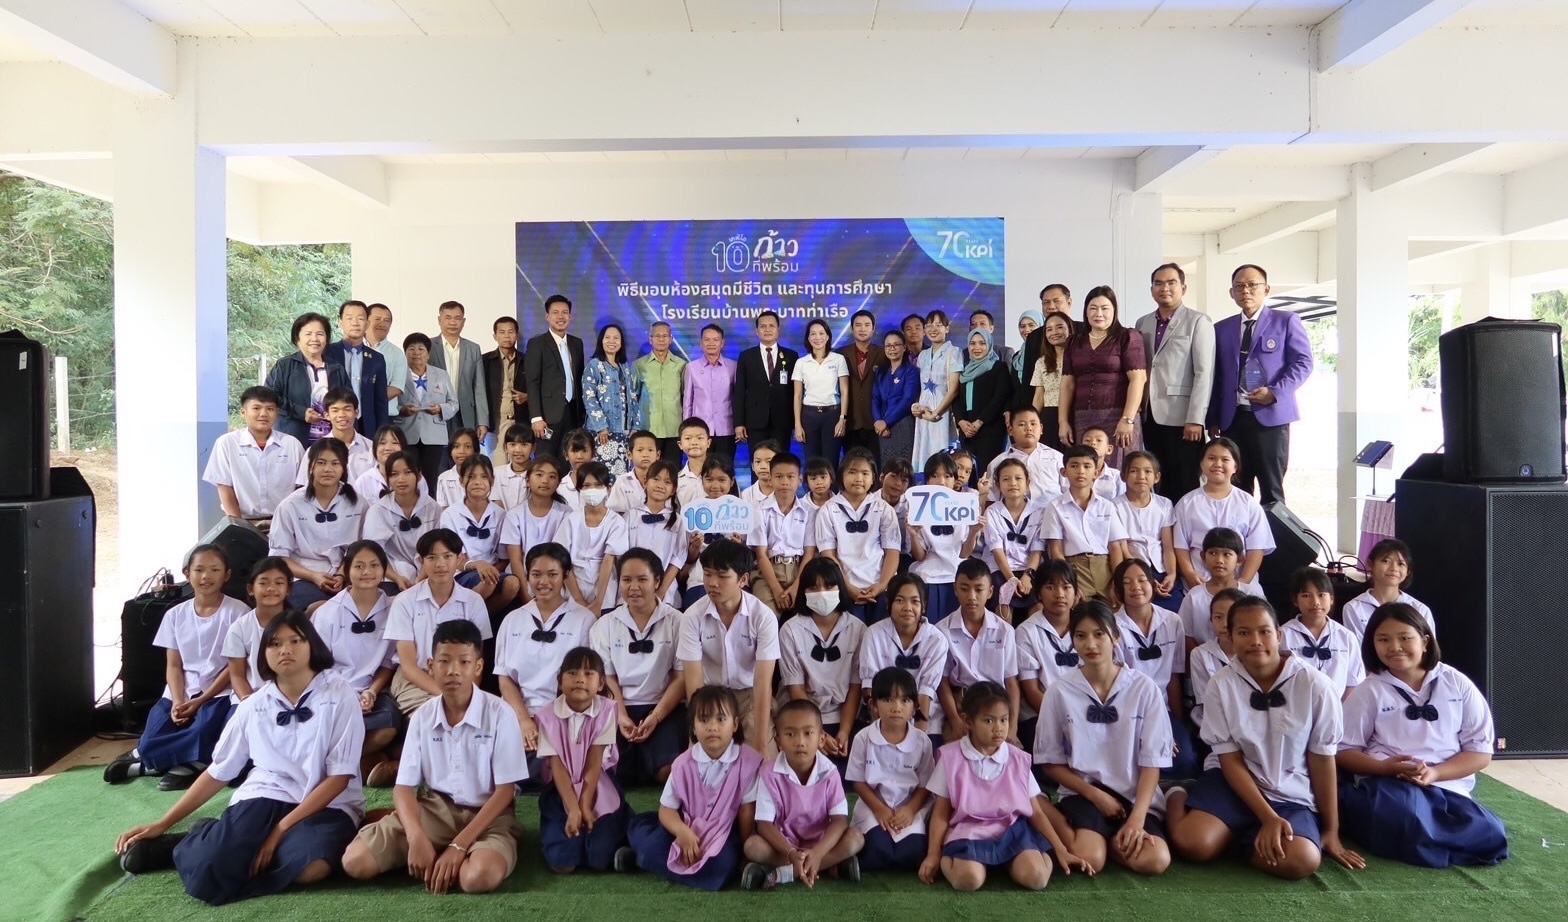 ครบรอบ 10 ปี โครงการ “ห้องสมุดมีชีวิต เคพีไอ” เดินหน้าหนุนการศึกษาเด็กไทยให้ทุนต่อเนื่องตลอด 10 ปี 12 โรงเรียน 